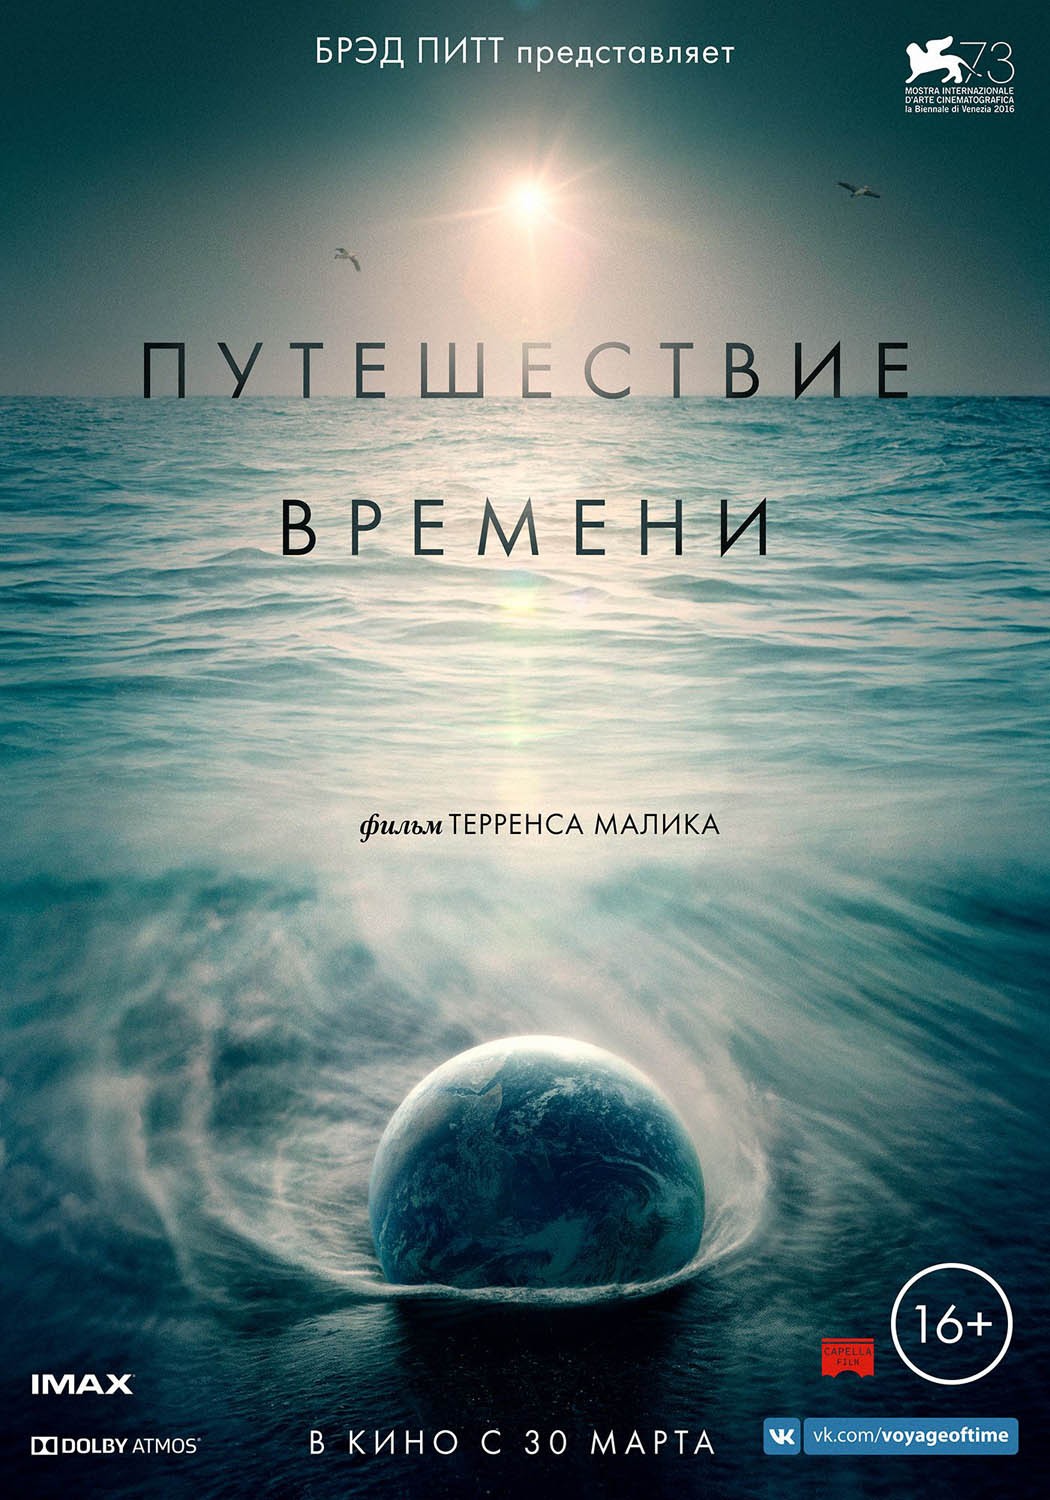 Постер N133984 к фильму Путешествие времени (2016)